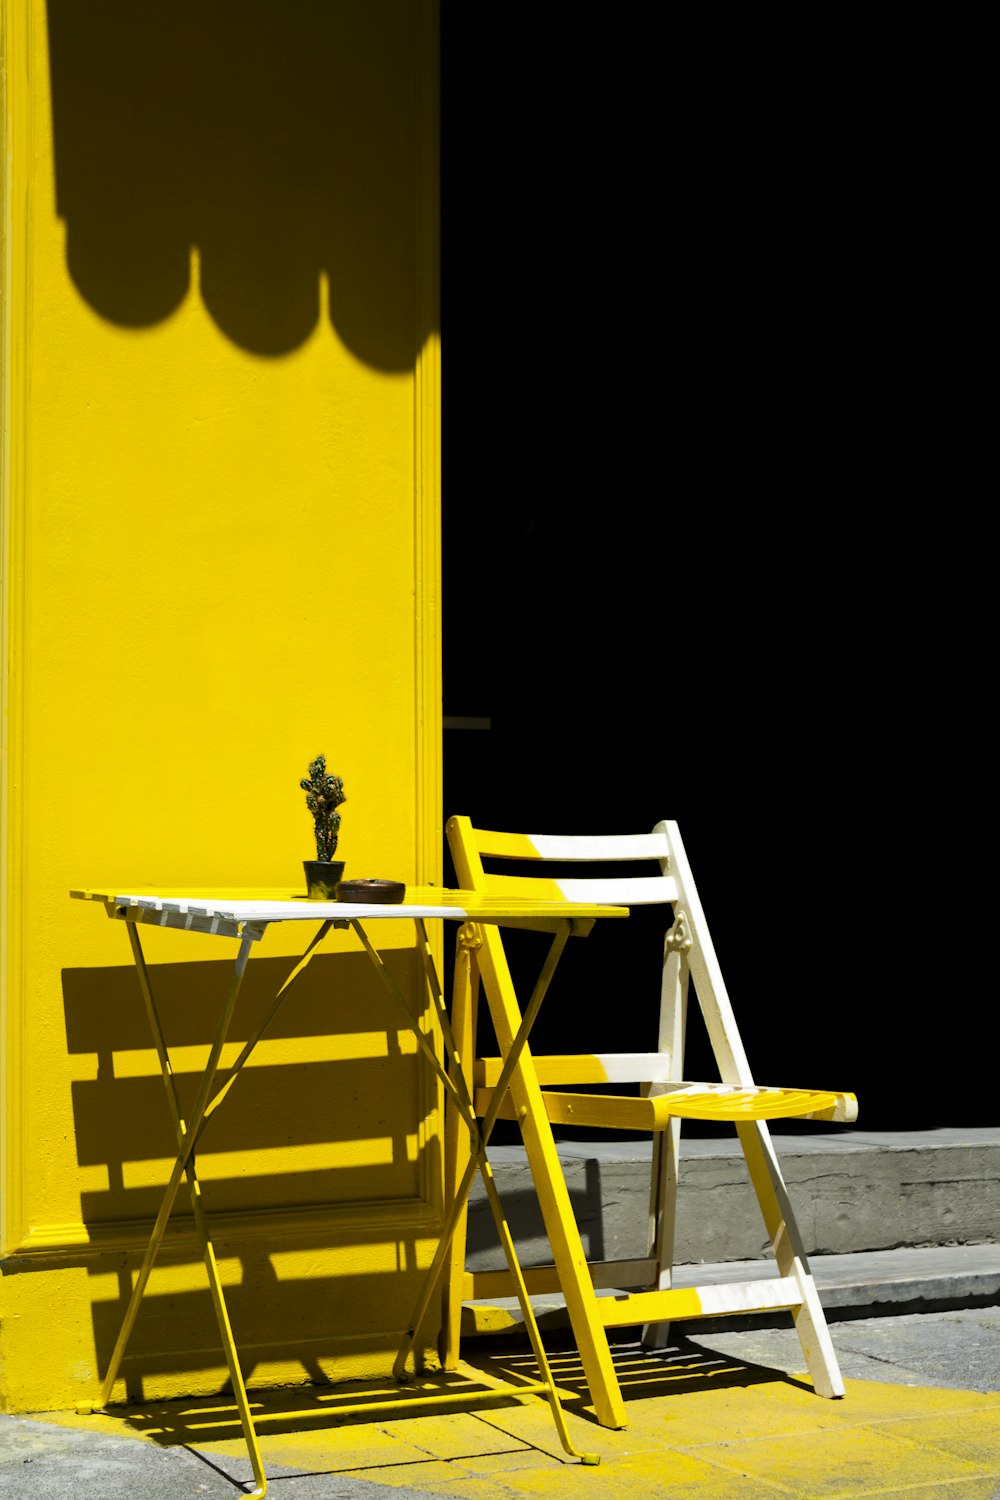 Klapptisch und Stuhl in der Nähe der gelben Wand